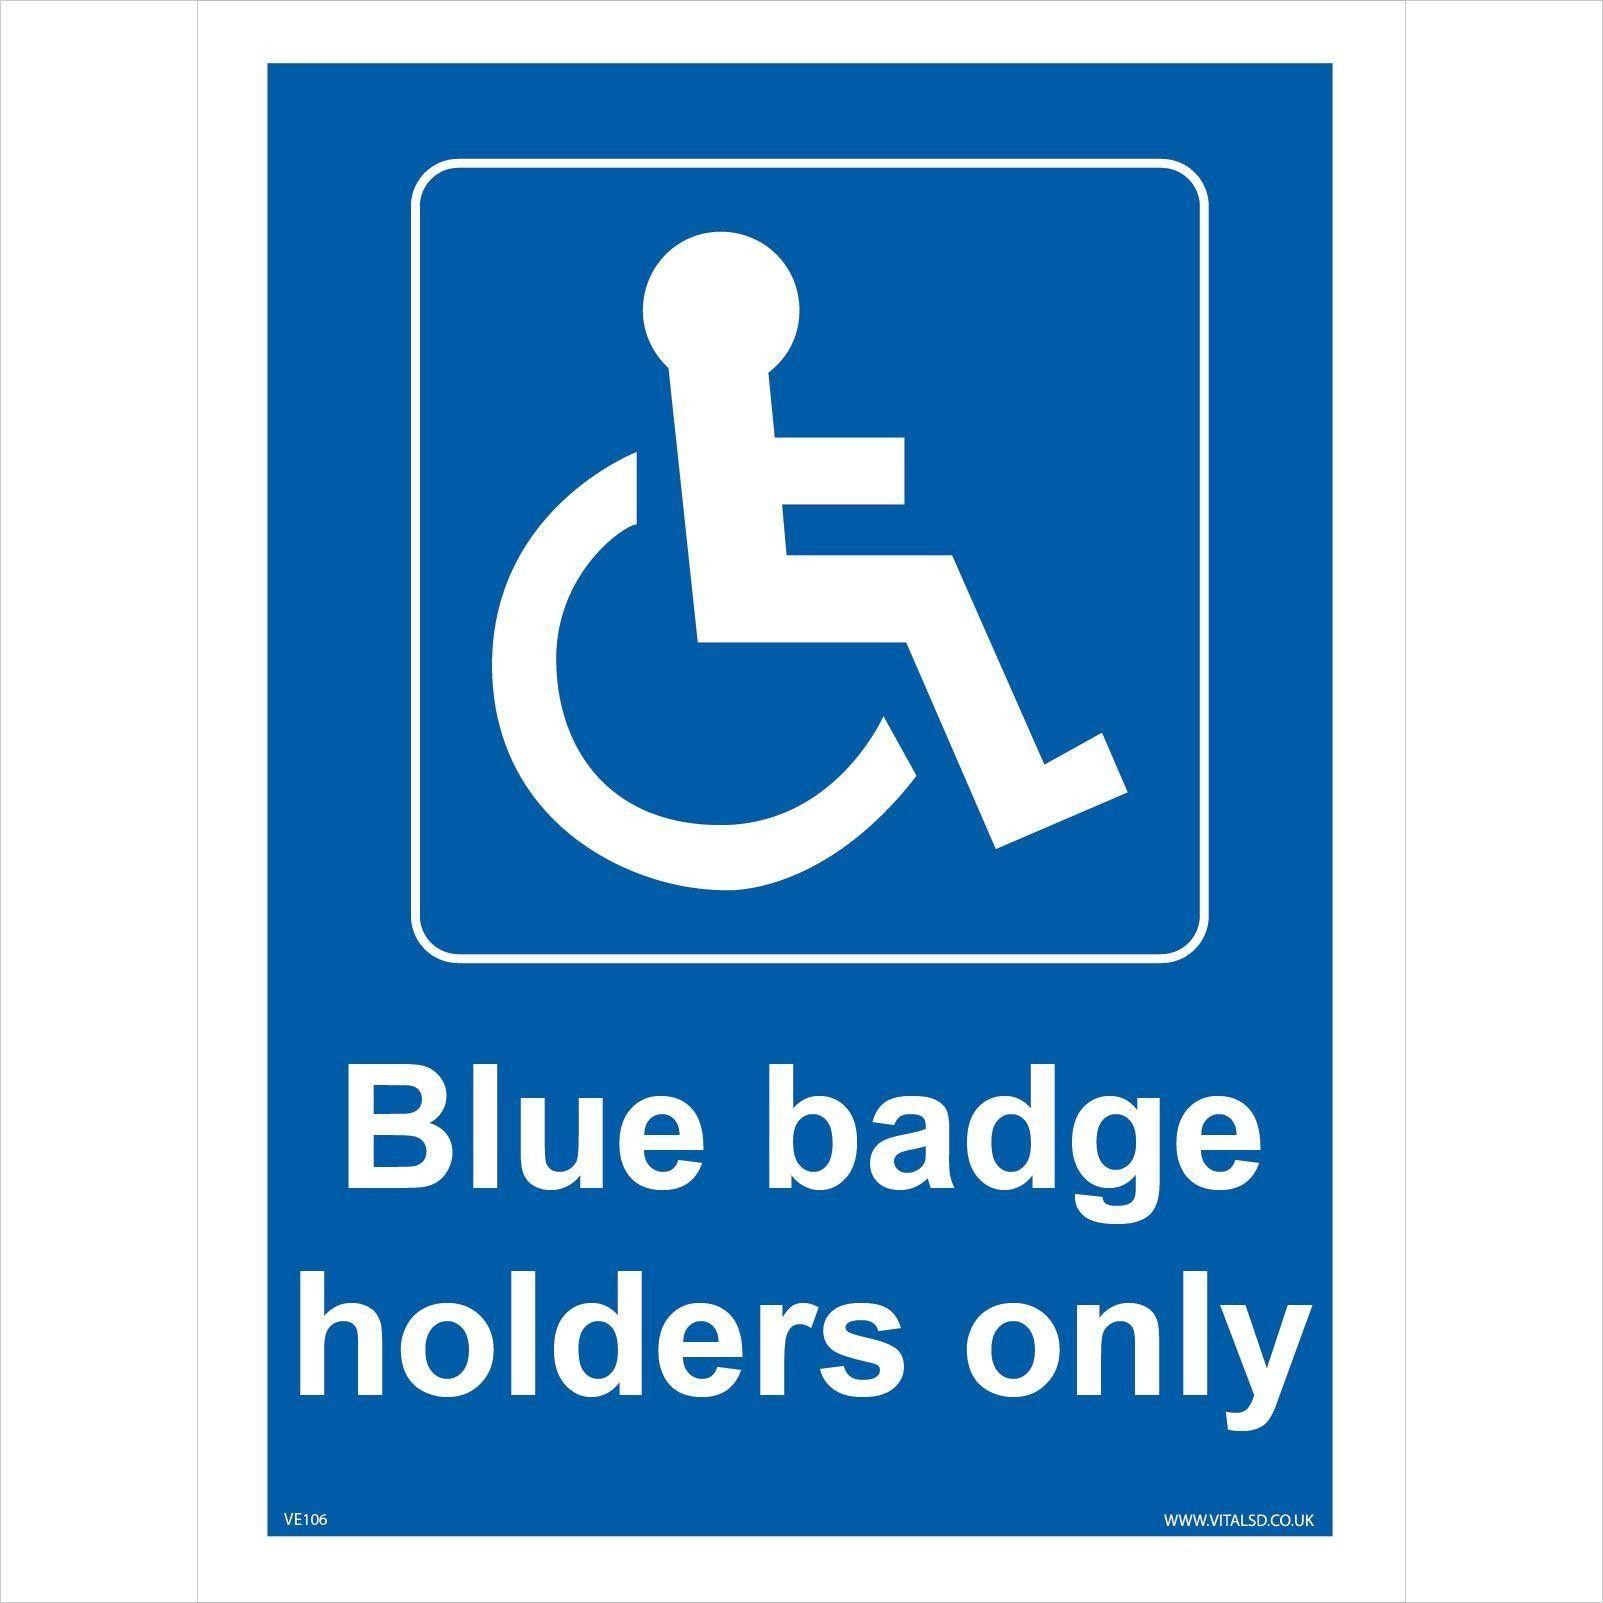 Blue Sign Logo - VE106 Blue Badge Holders Only Vehicle Signs - PARKING - PARKING